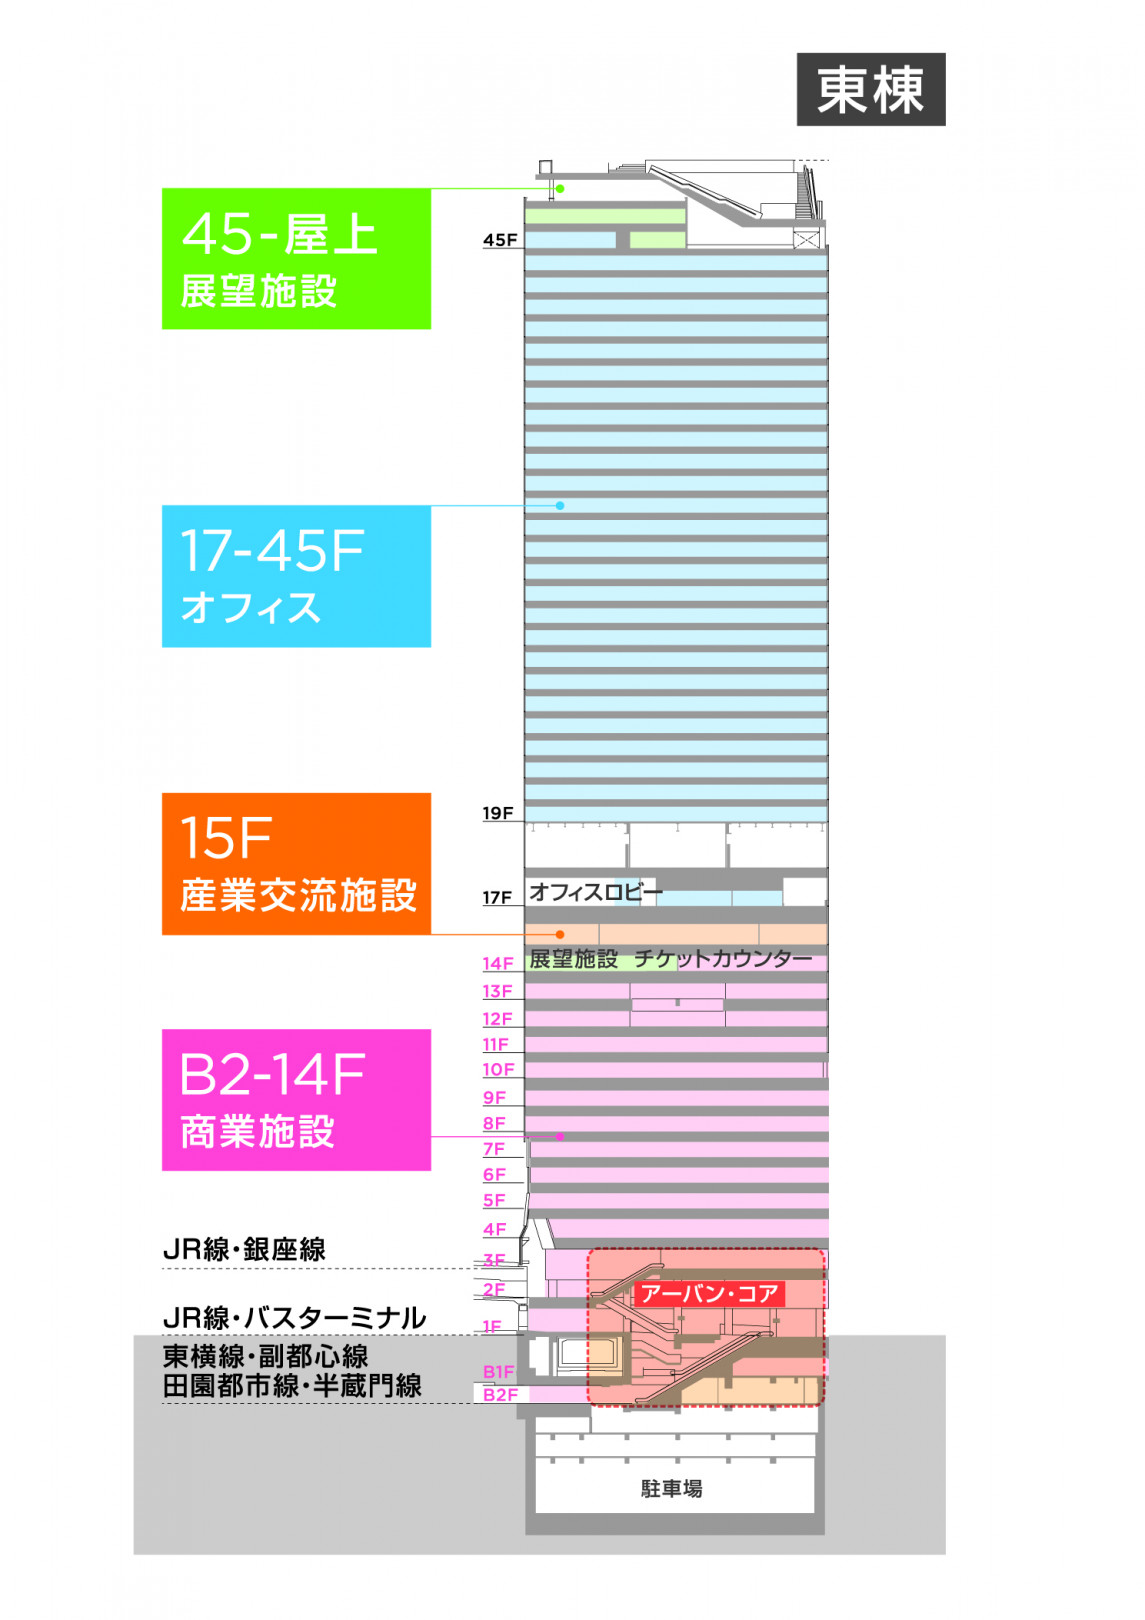 「渋谷スクランブルスクエア第I期（東棟）」が2019年秋開業